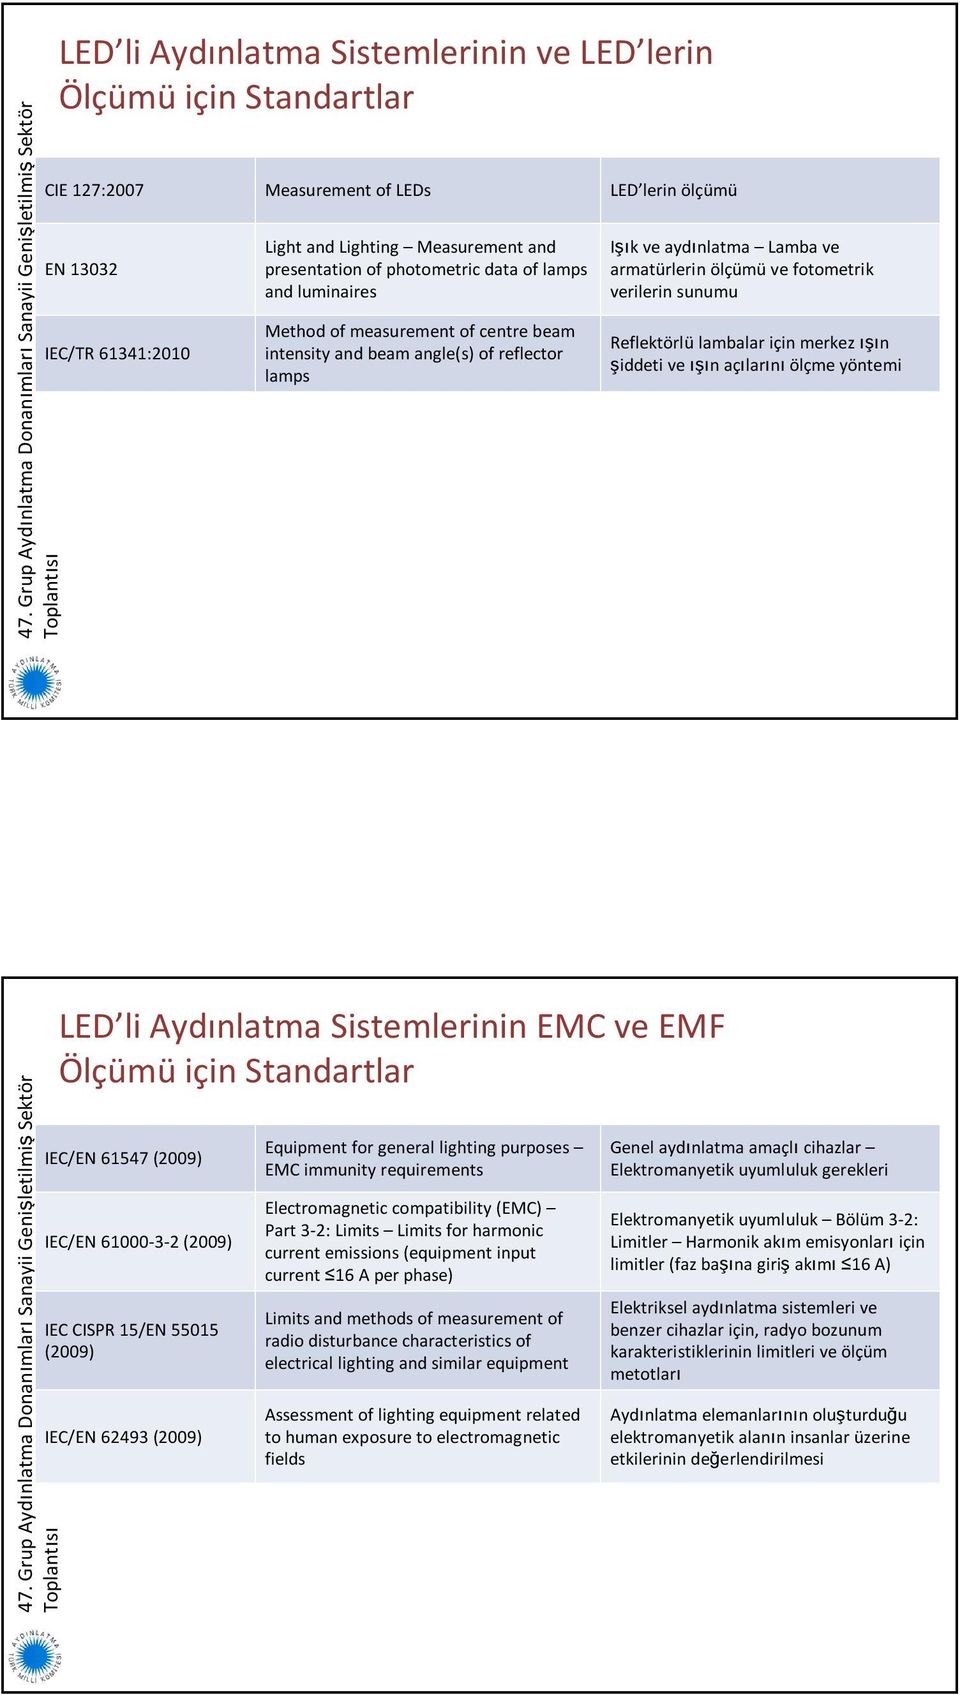 sunumu Reflektörlü lambalar için merkez ışın şiddeti ve ışın açılarını ölçme yöntemi LED li Aydınlatma Sistemlerinin EMC ve EMF Ölçümü için Standartlar IEC/EN 61547 (2009) IEC/EN 61000-3-2 (2009) IEC